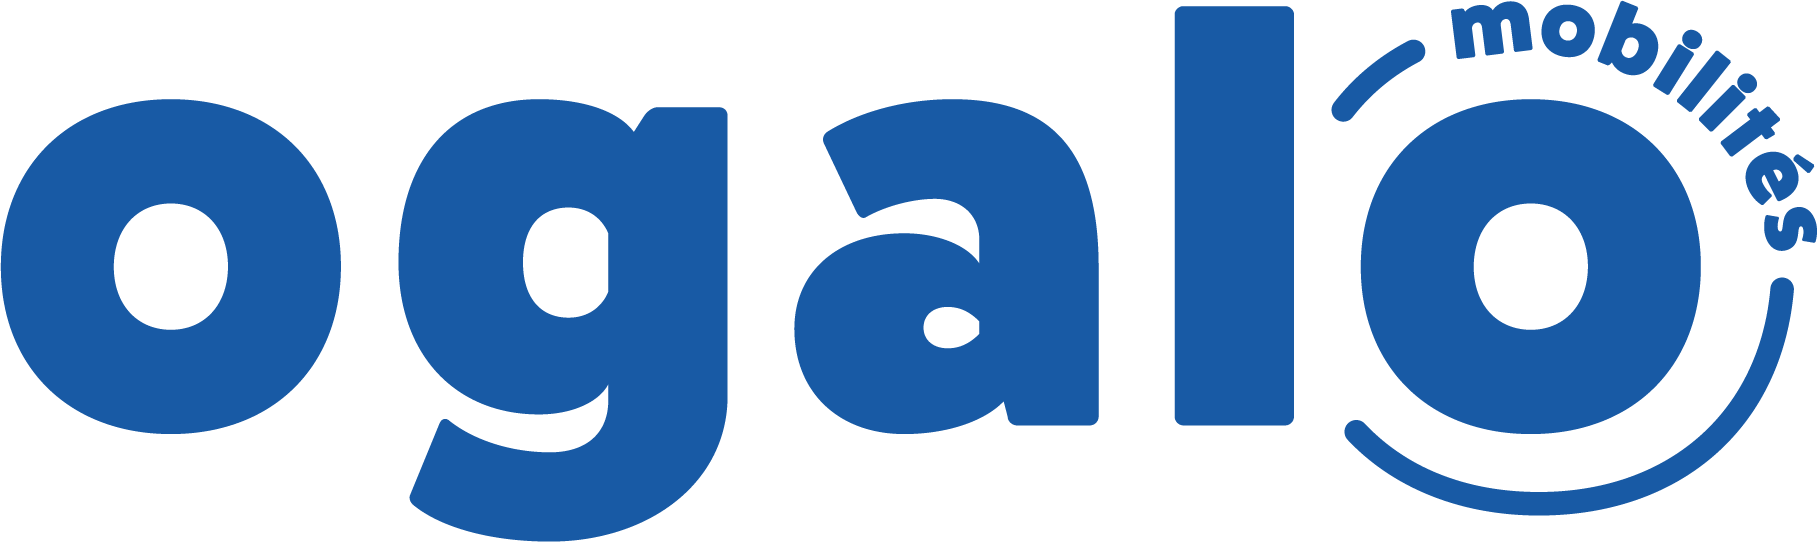 Logo Ogalo mobilité